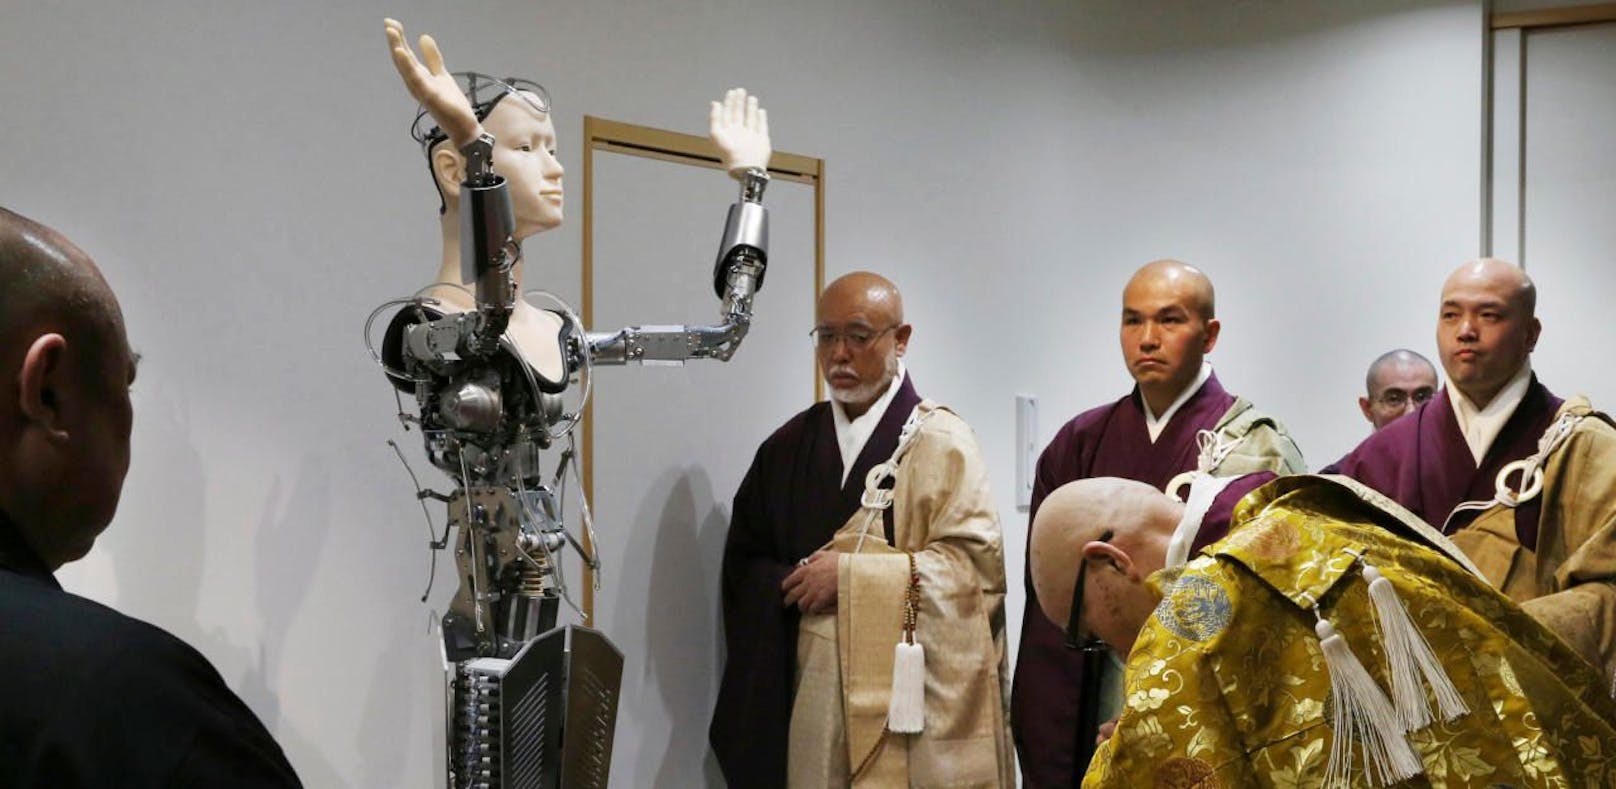 Dieser Roboter betet mit buddhistischen Mönchen